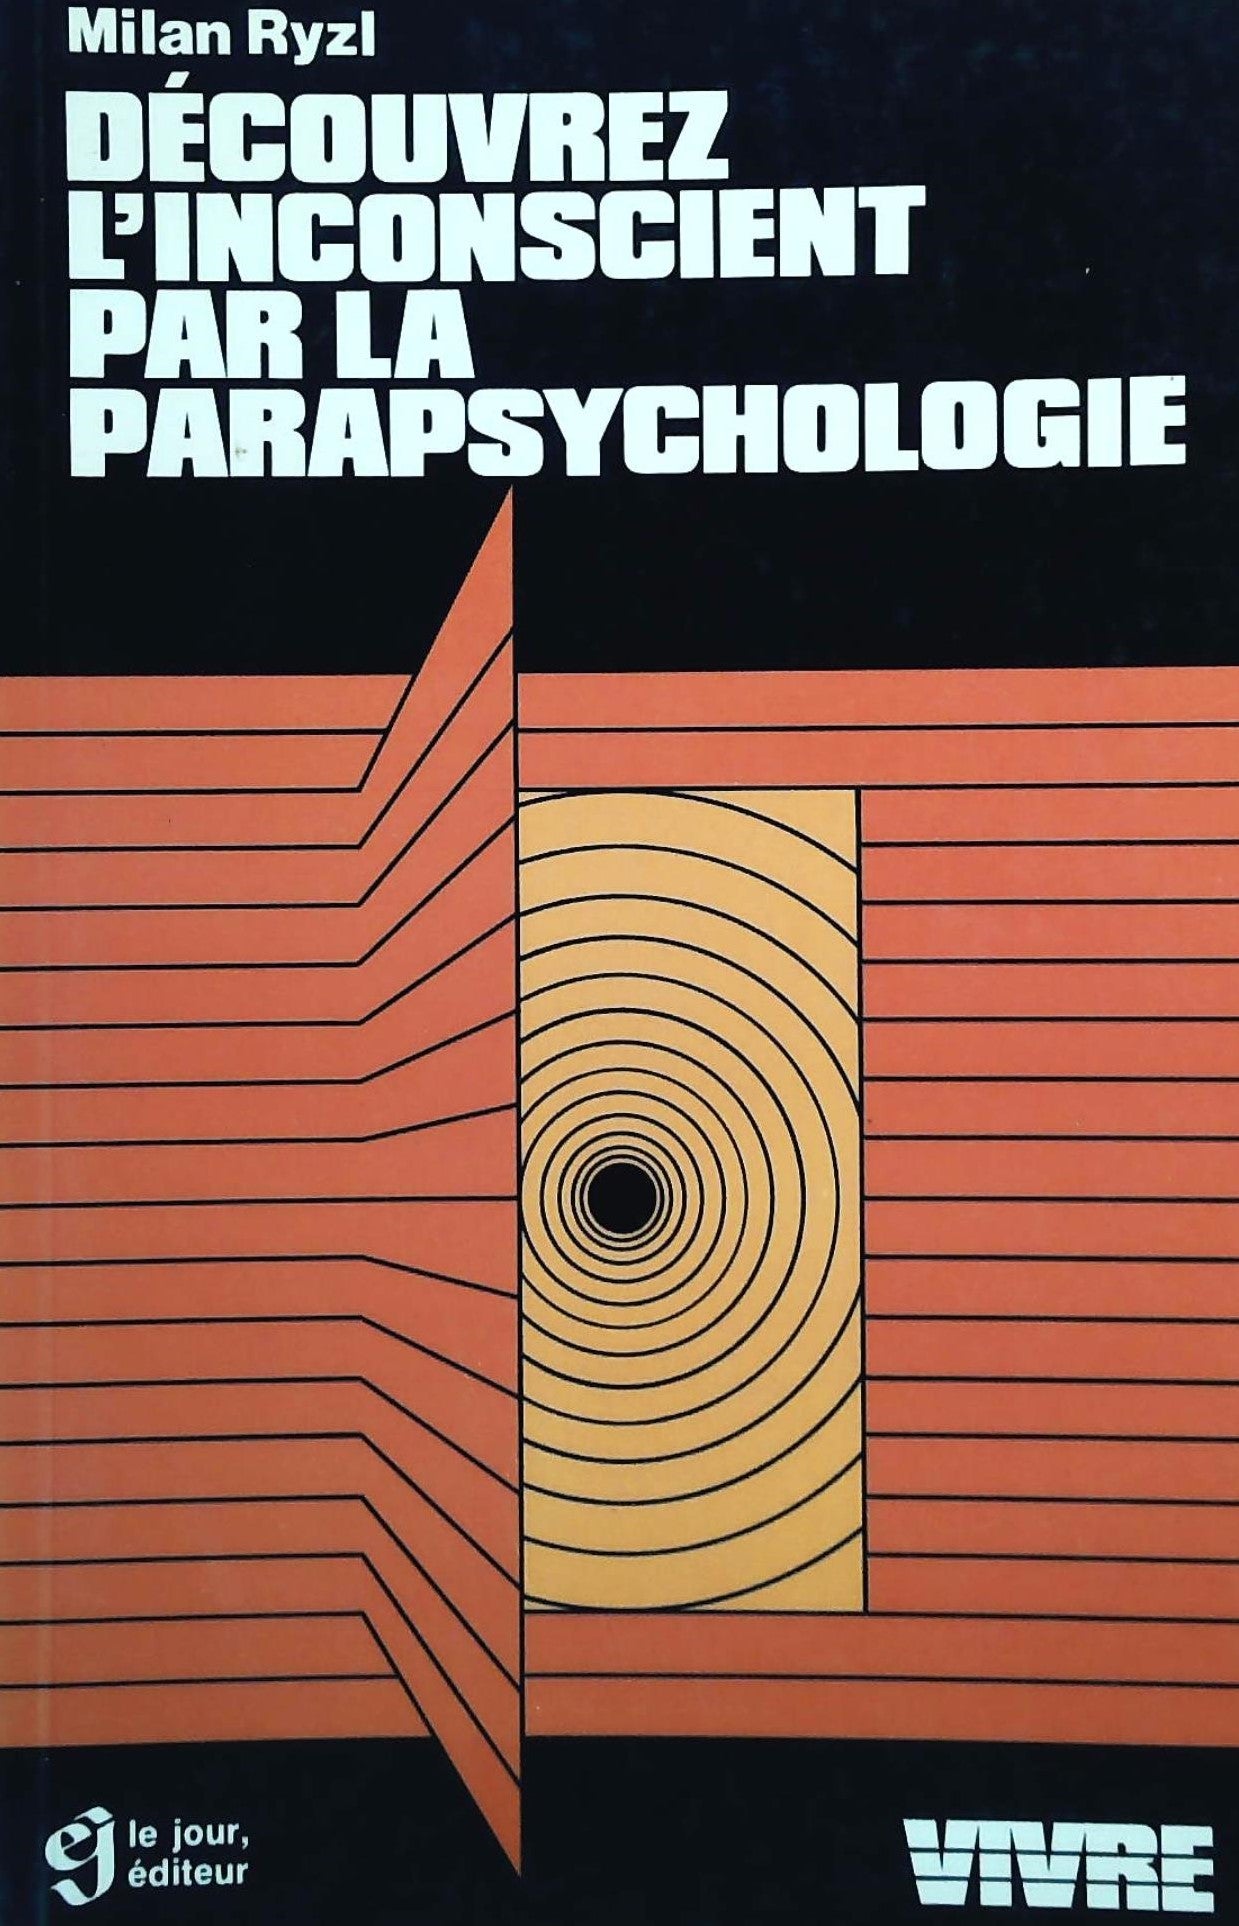 Livre ISBN 2890440869 Découvrez l'inconscient par la parapsychologie (Milan Ryzl)